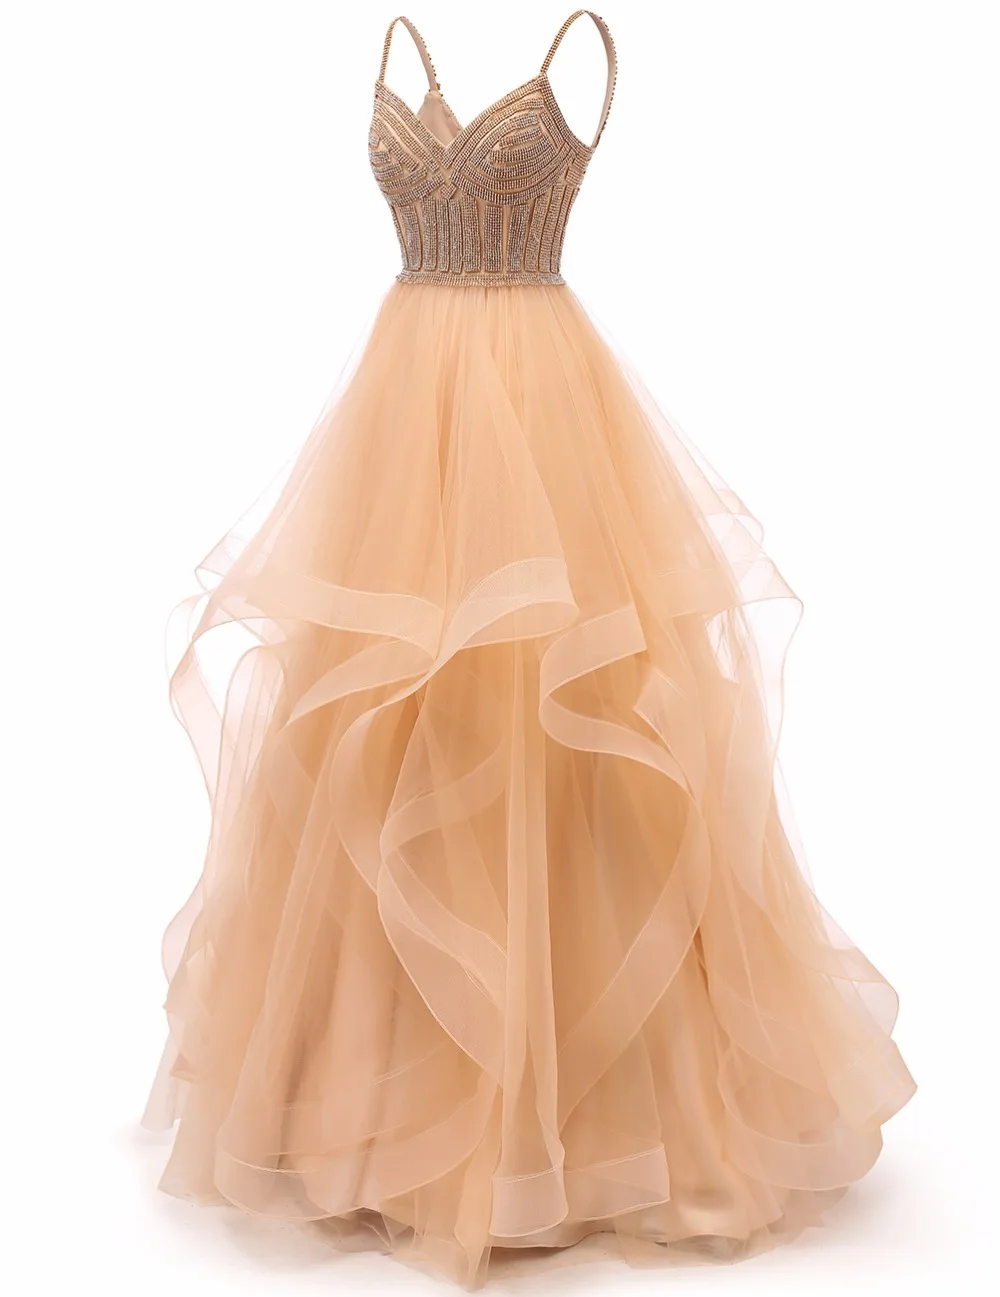 Vkbridal цвета шампанского золото Многоуровневое Тюлевое вечернее платье Длинные бальные платья кристаллы на шнуровке длинное формальное выпускное платье ремни - Цвет: Шампанское